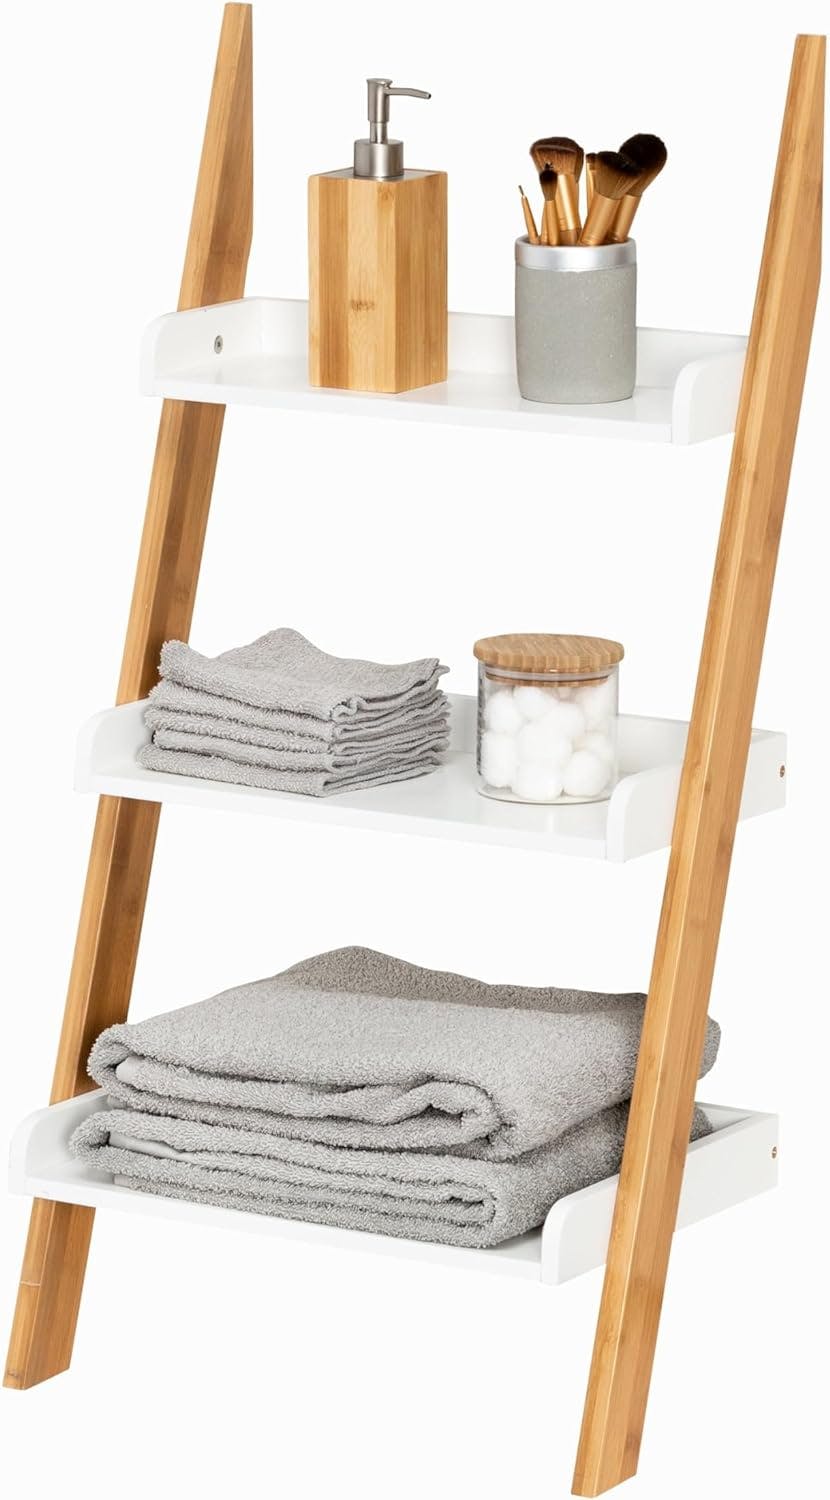 3-Tier White Leaning Ladder Shelf